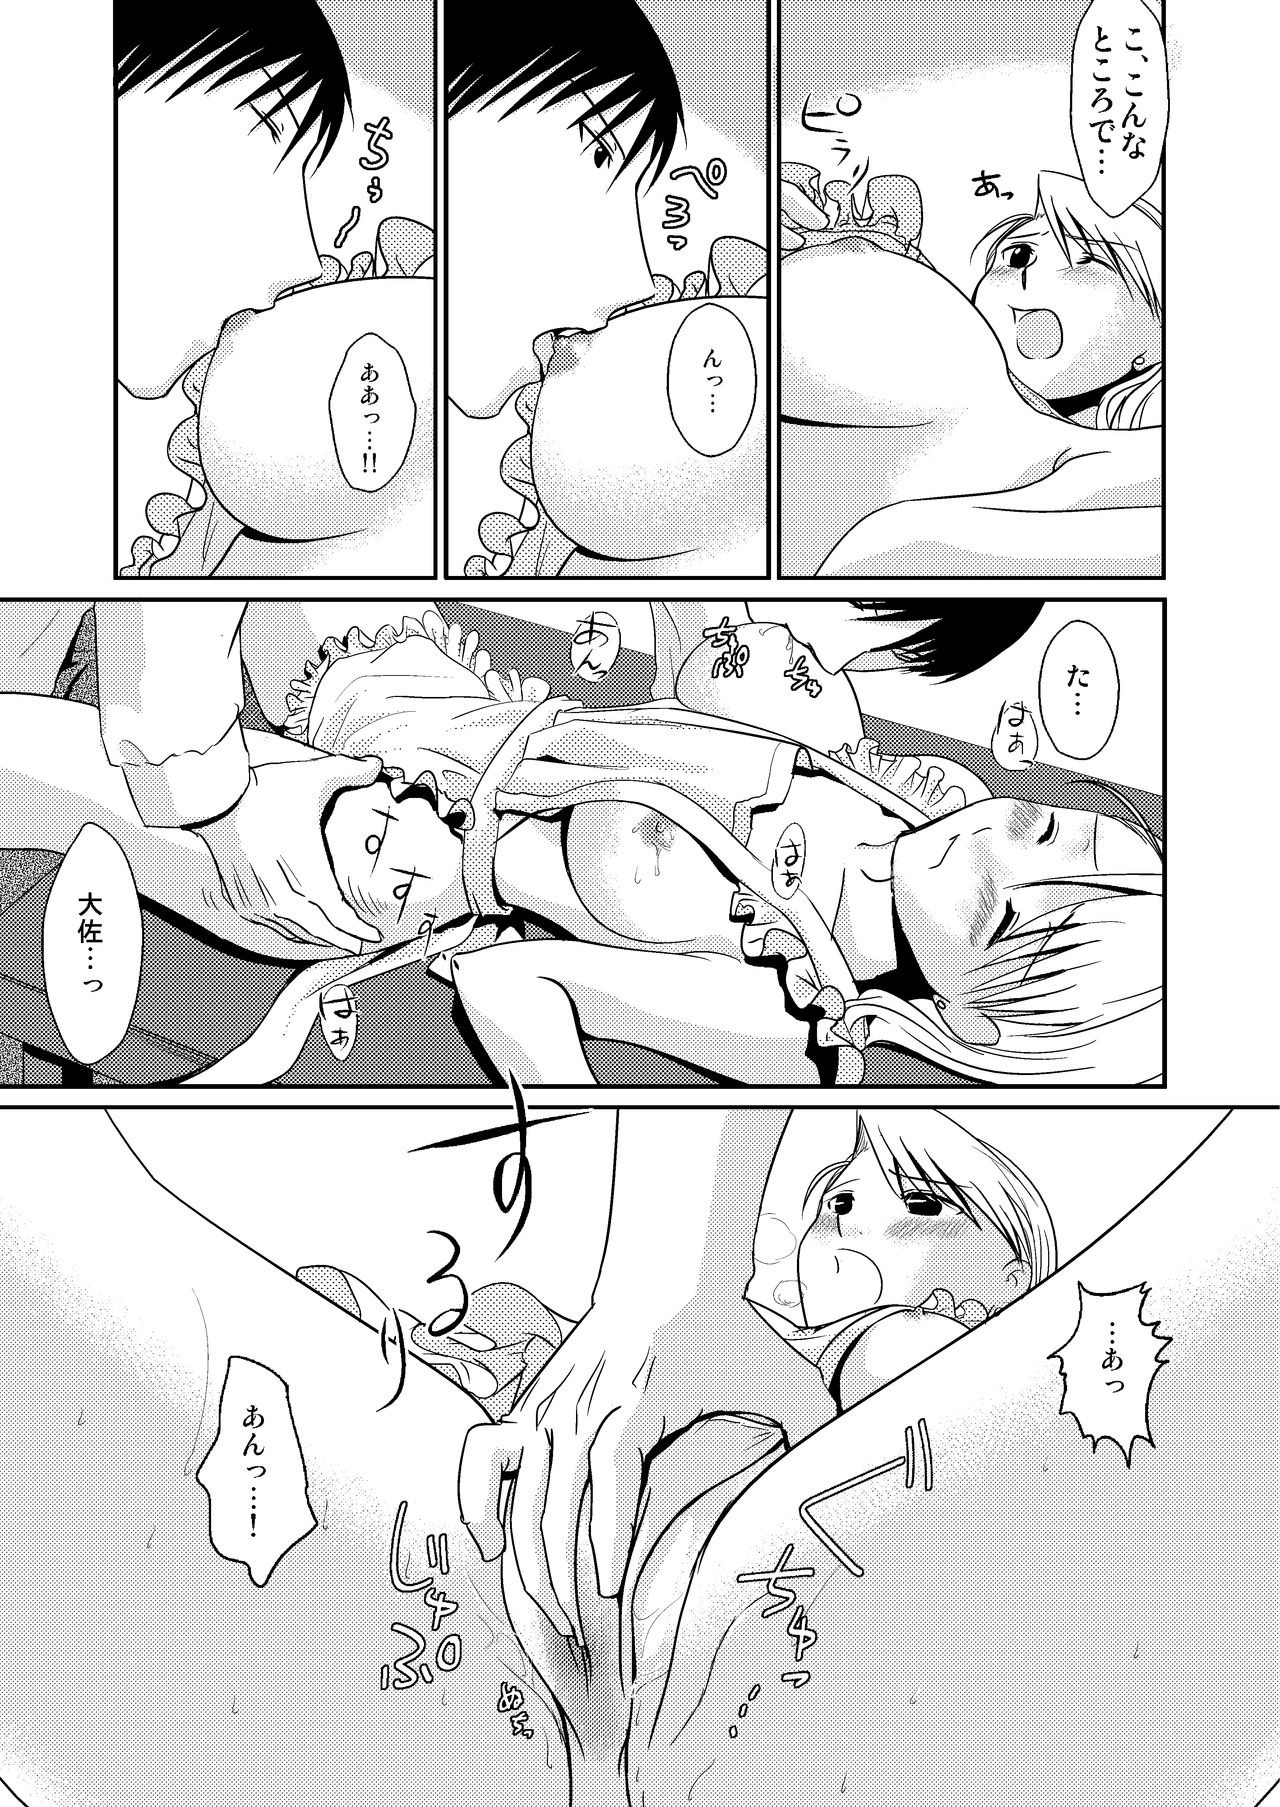 Masshiro porn comic picture 4